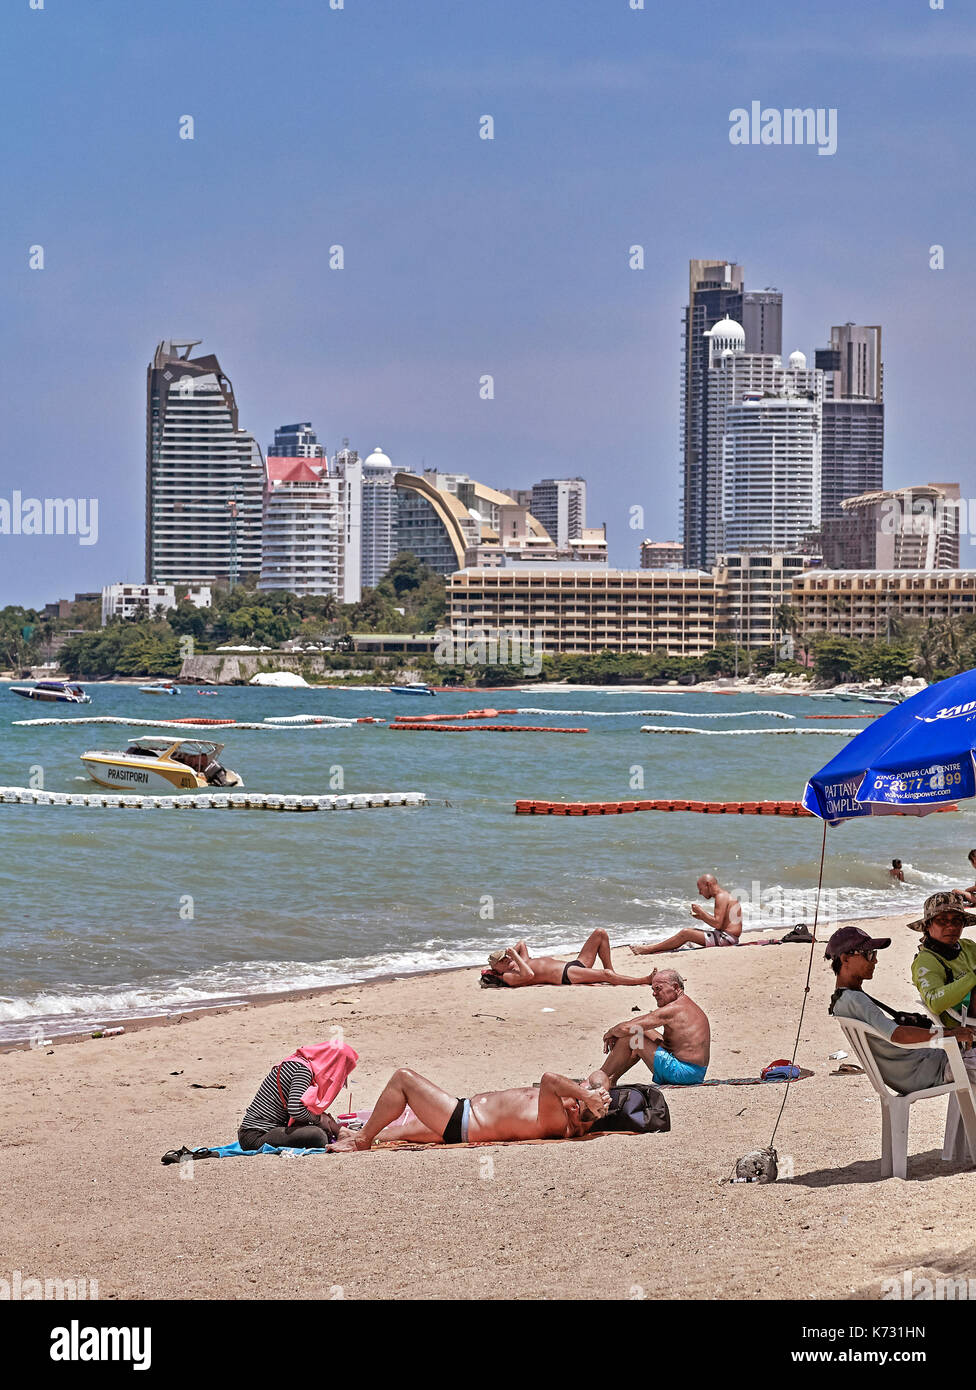 Spiaggia di Pattaya e alberghi. Con vista sull'oceano. Asian beach resort. Thailandia del sud-est asiatico Foto Stock